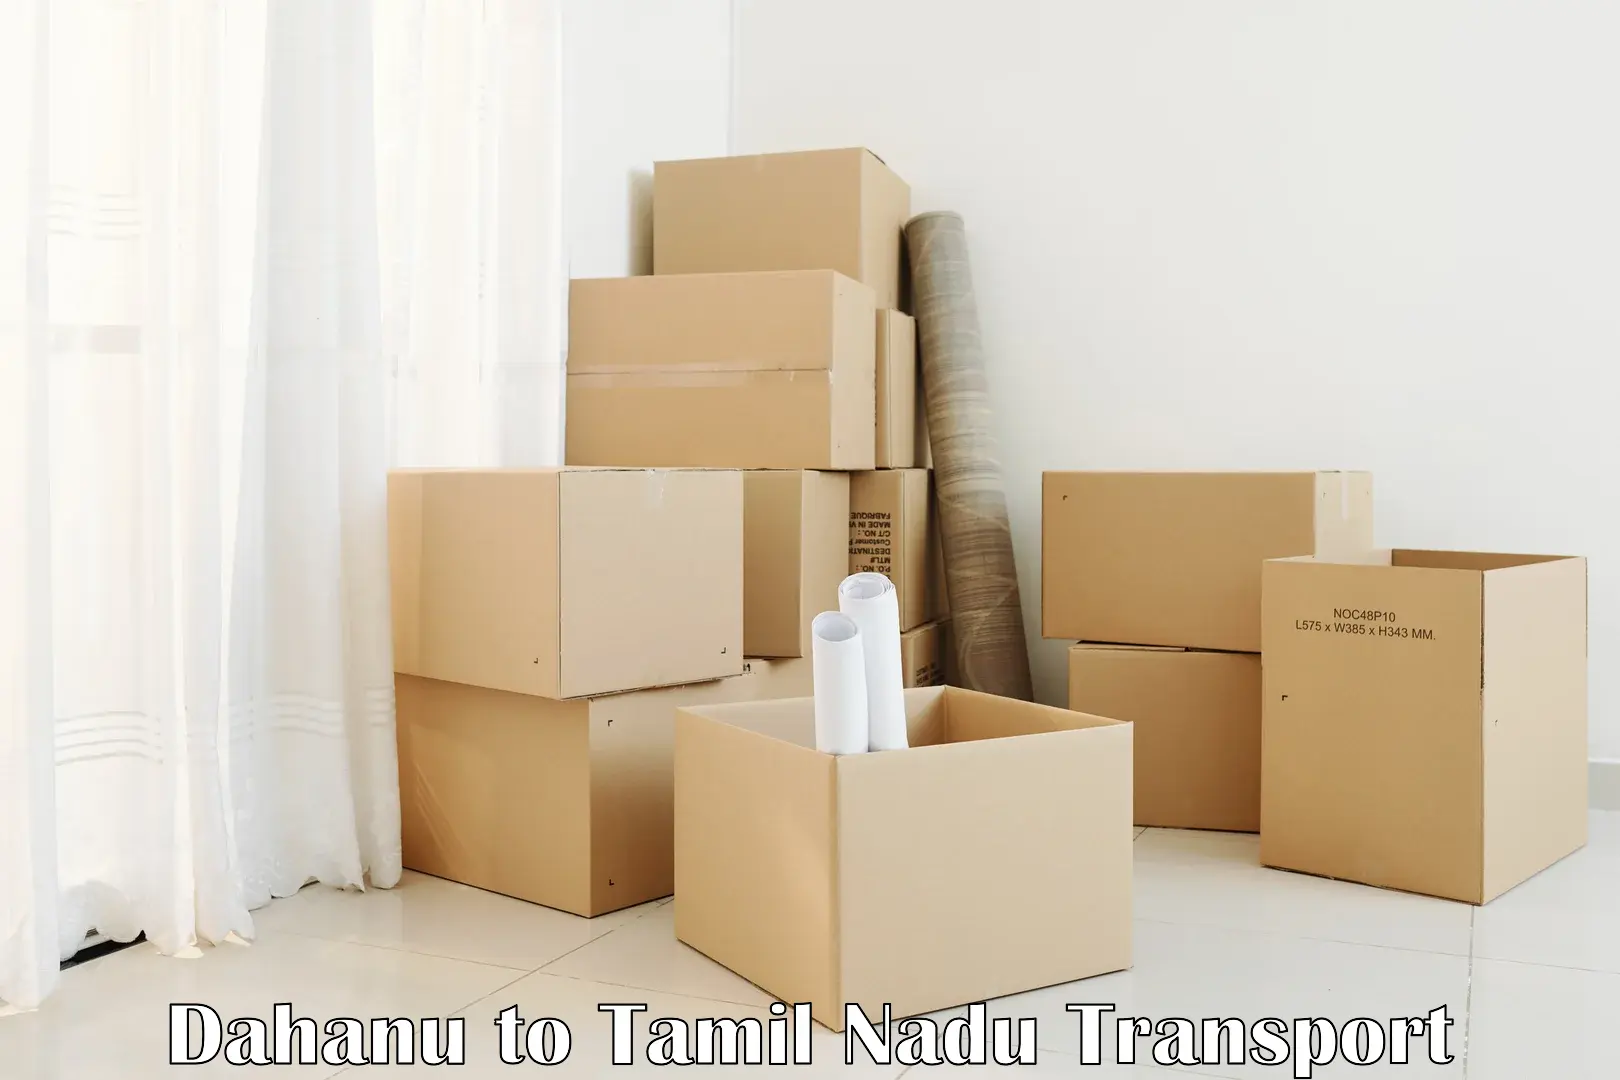 Two wheeler parcel service Dahanu to Ramanathapuram